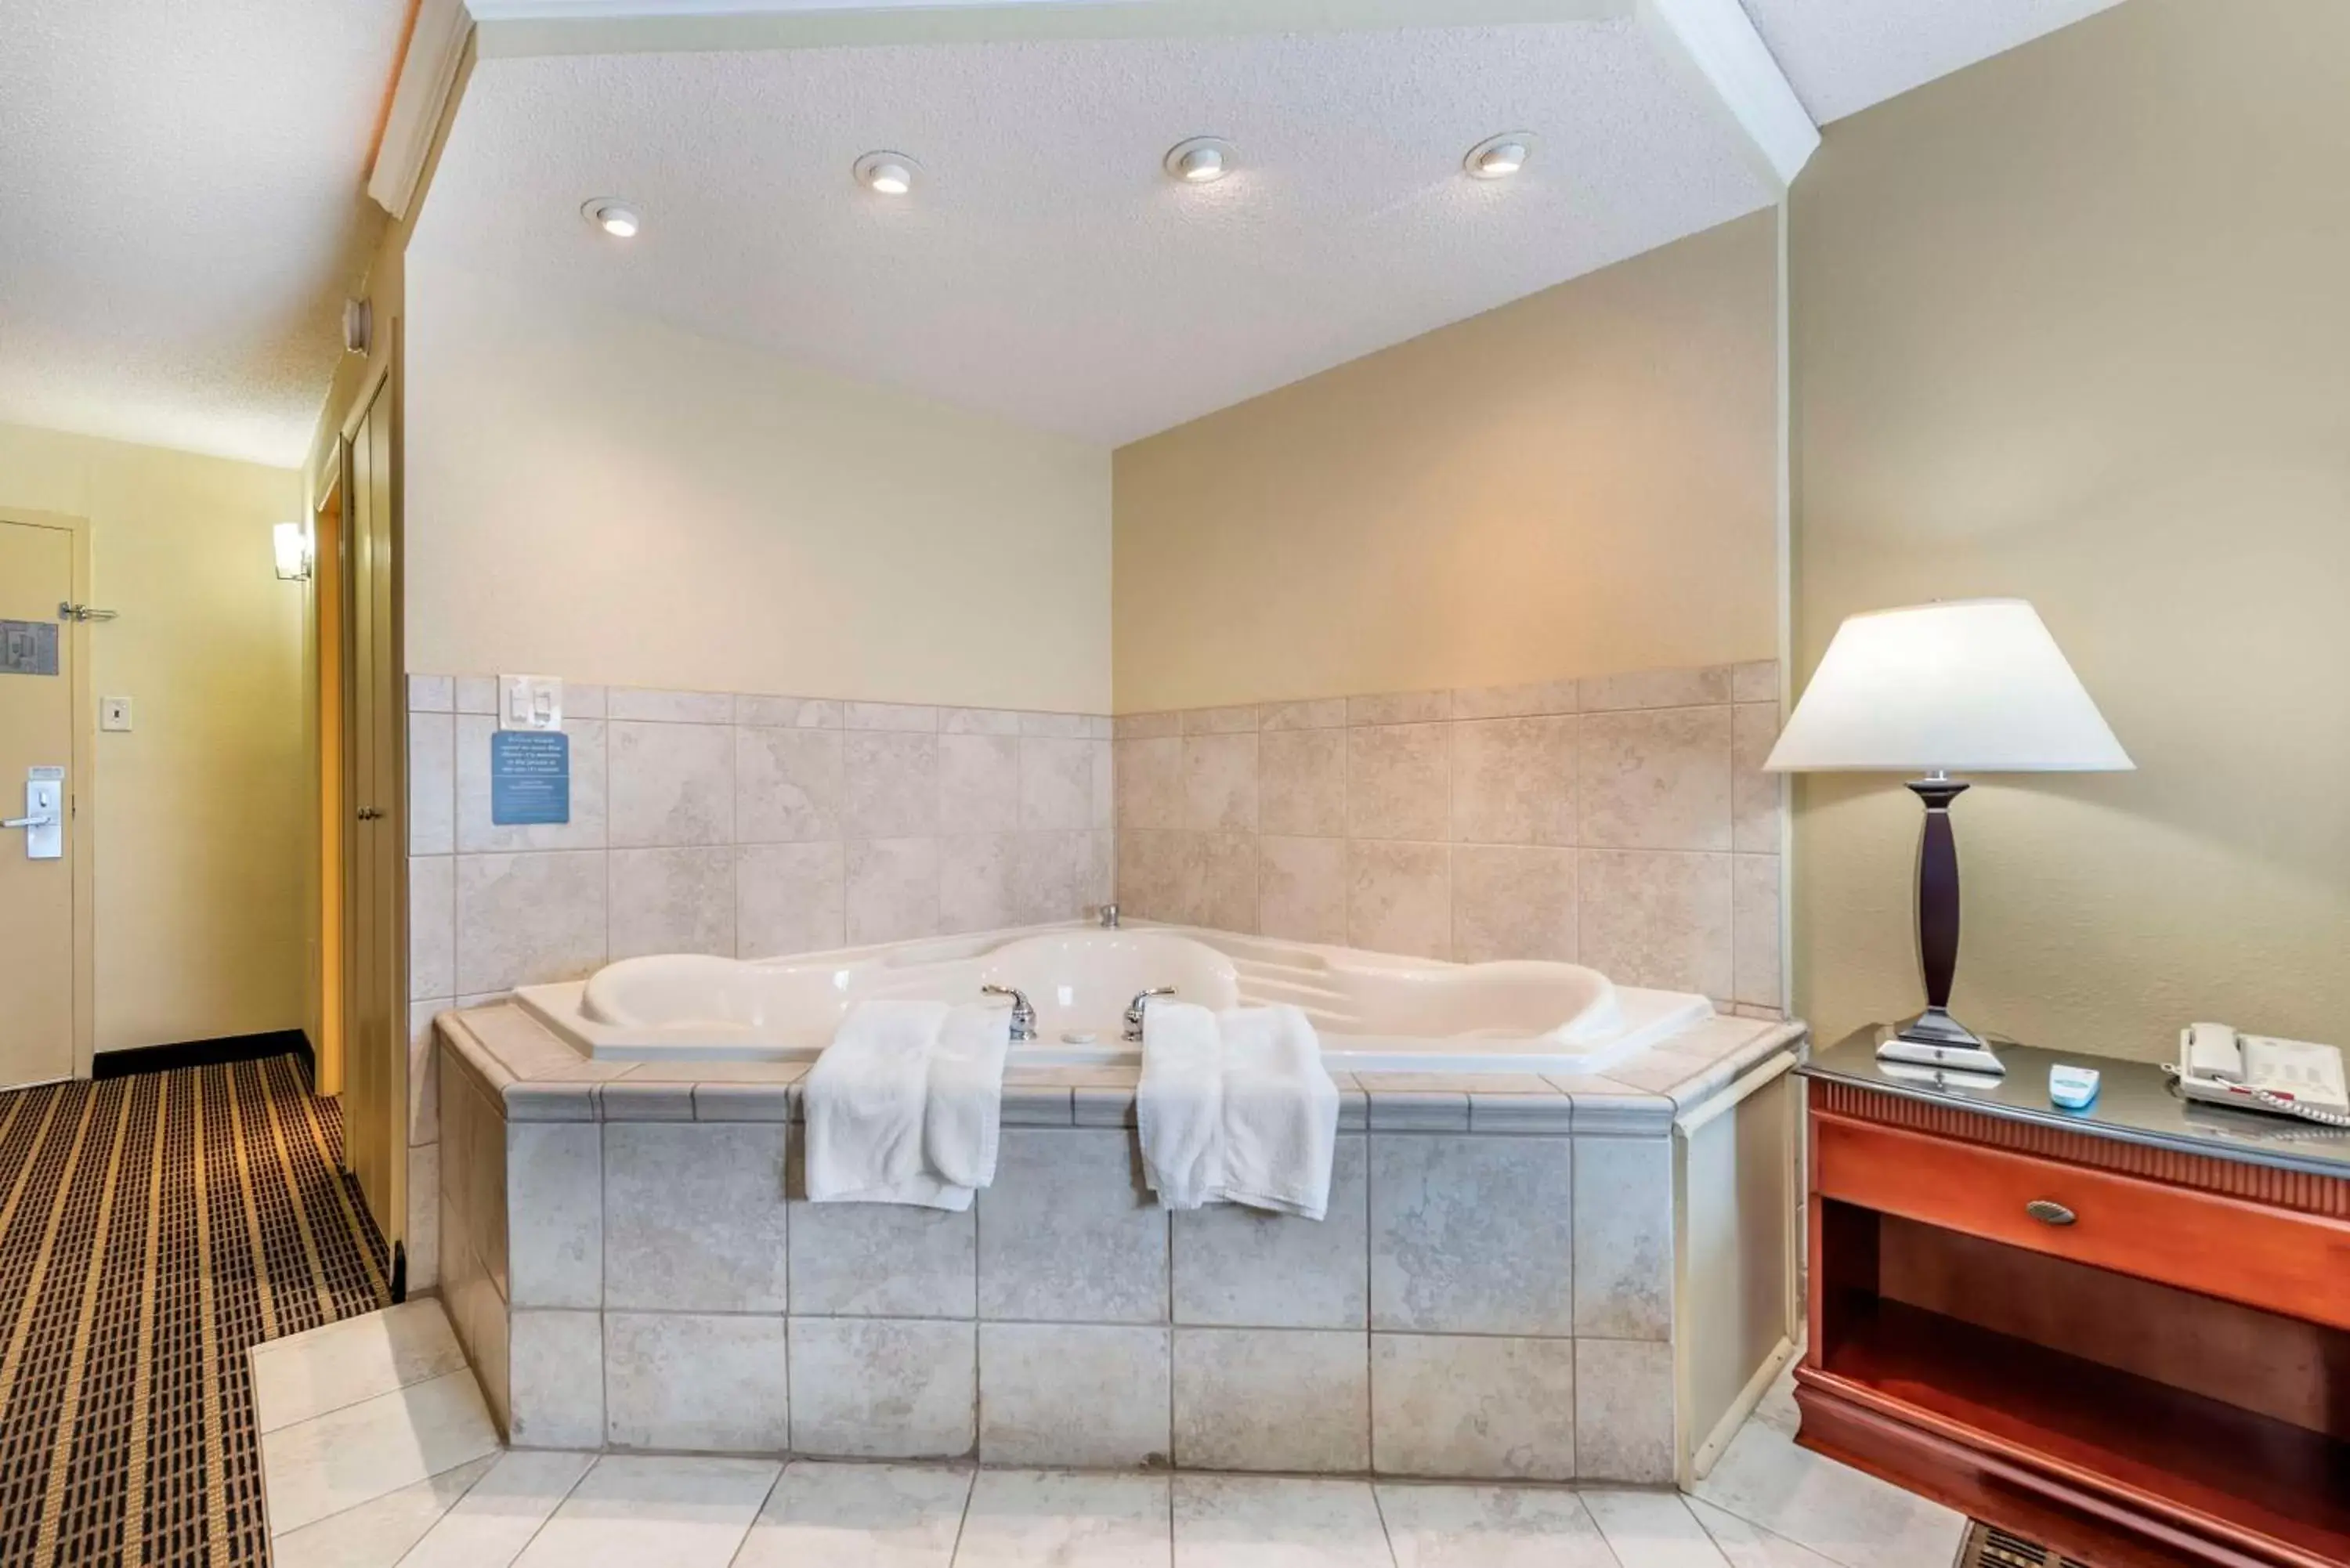 Bedroom, Bathroom in Best Western Plus Bridgeport Inn